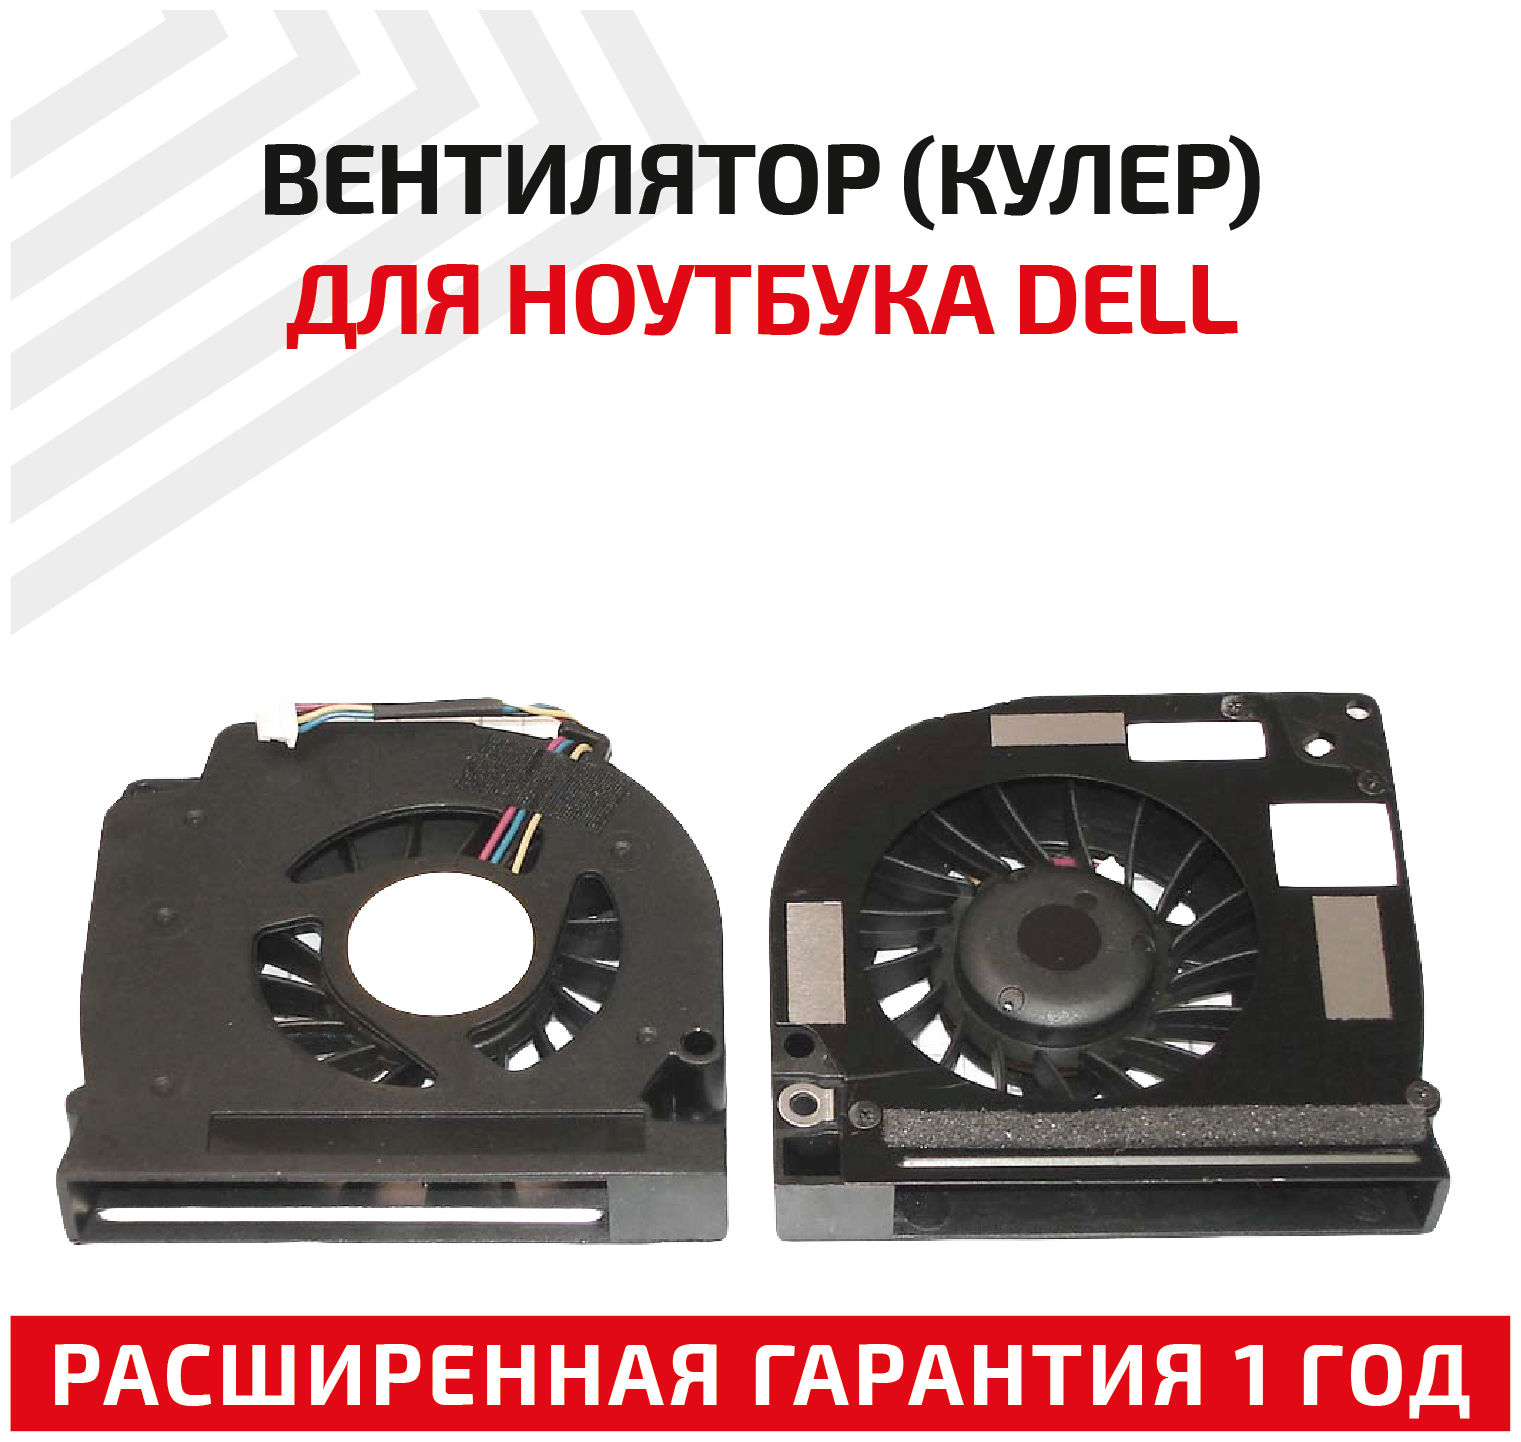 Вентилятор (кулер) для ноутбука Dell Latitude E5400, E5500, 4-pin